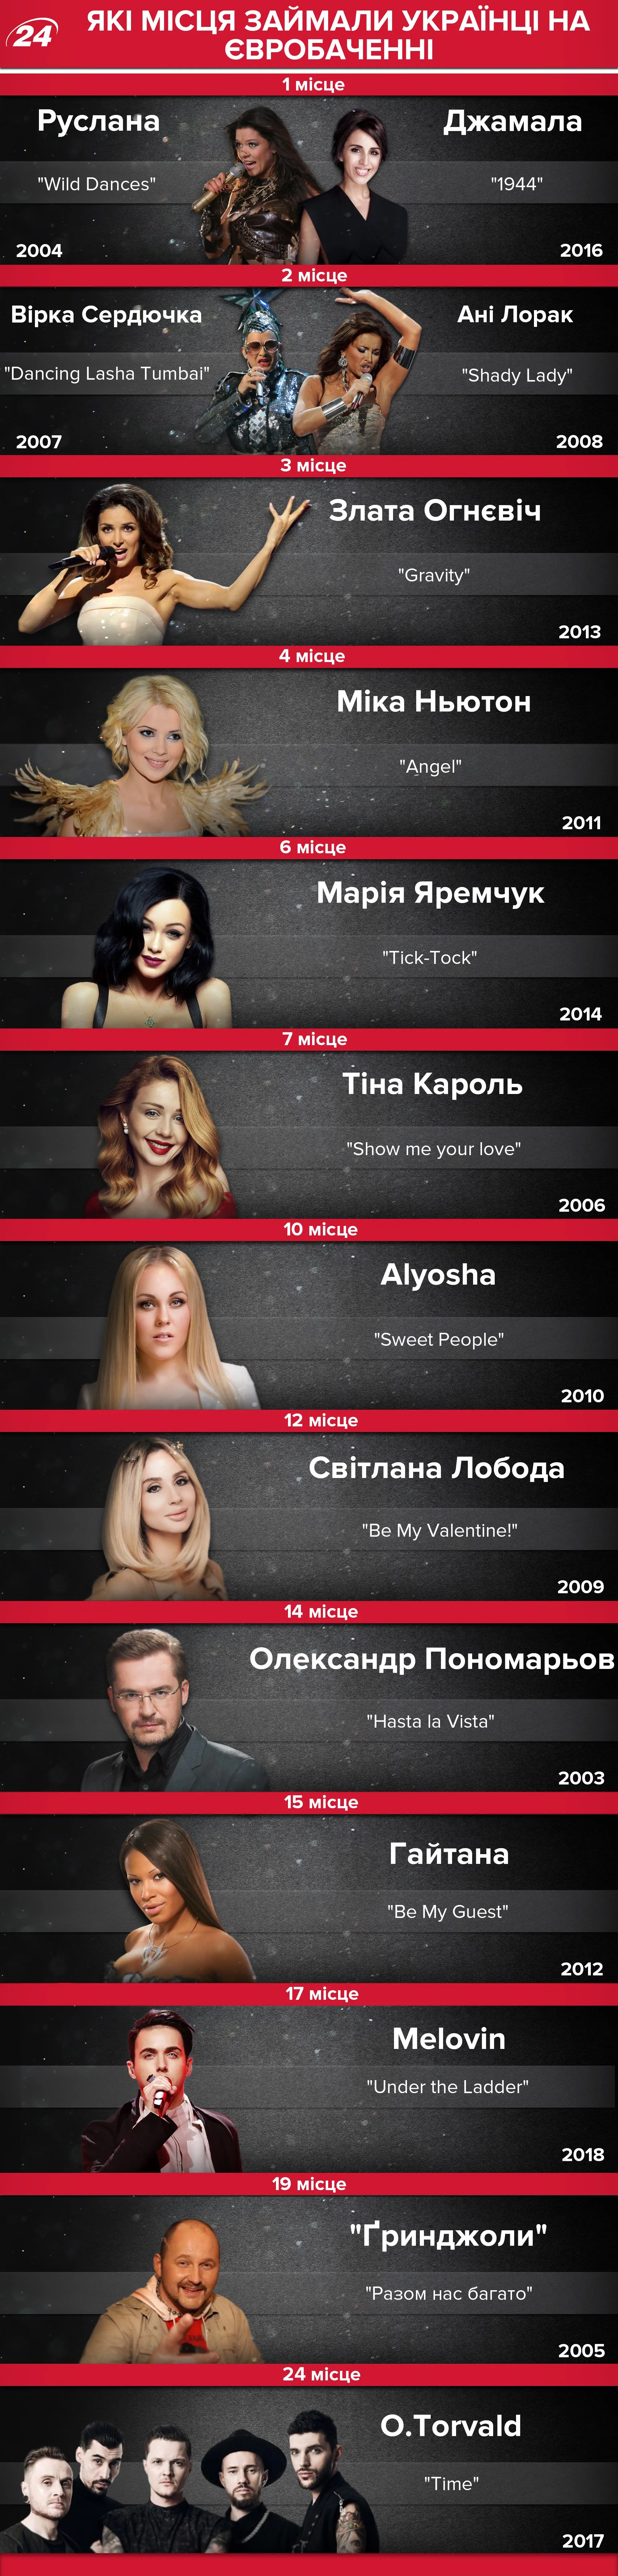 Украина на Евровидение: какие места добывали украинцы на конкурсе